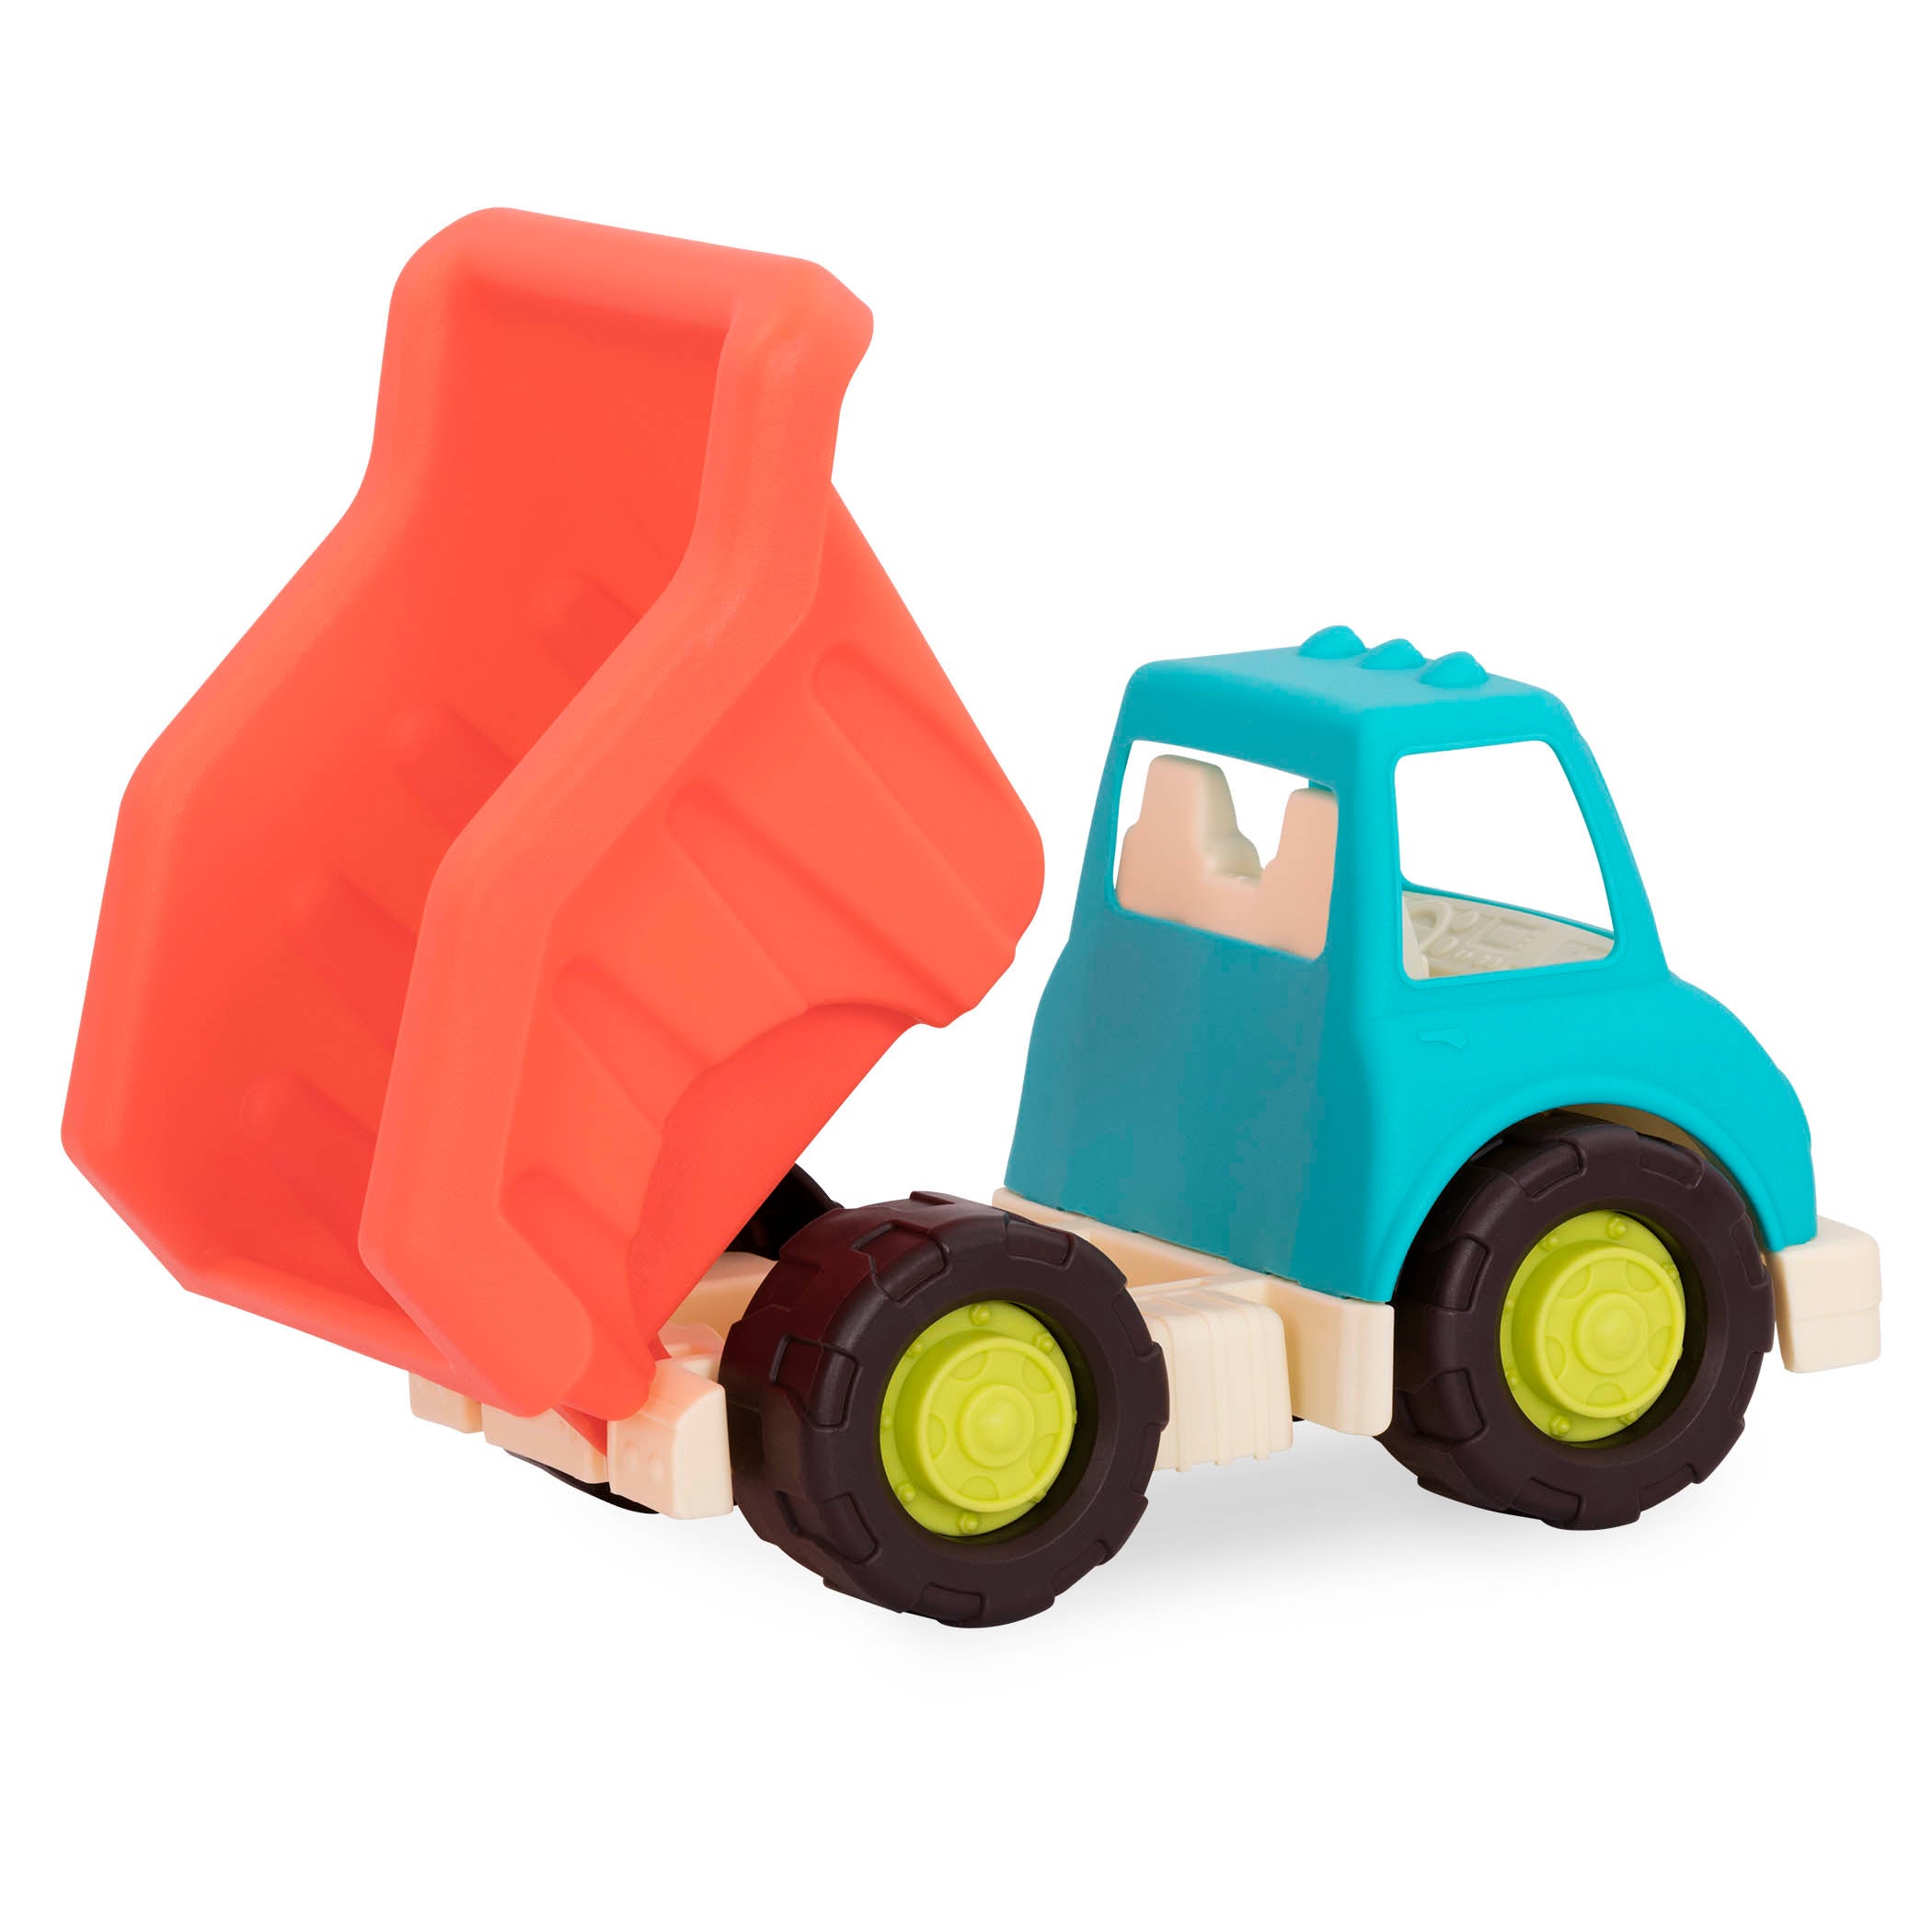 Toy dump truck.